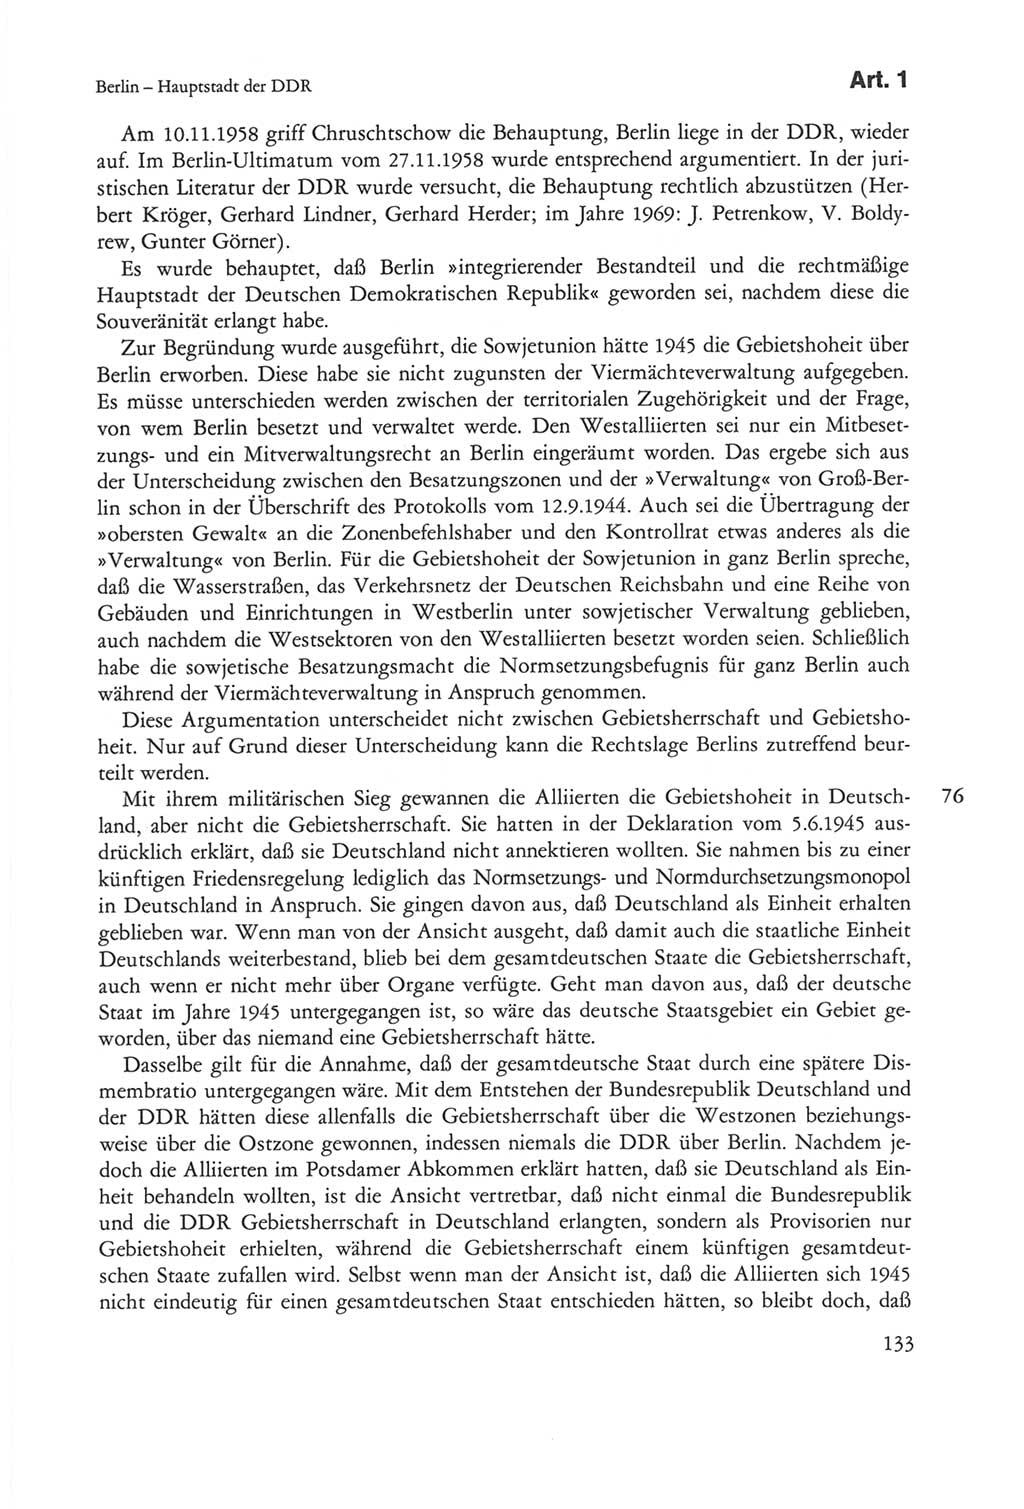 Die sozialistische Verfassung der Deutschen Demokratischen Republik (DDR), Kommentar 1982, Seite 133 (Soz. Verf. DDR Komm. 1982, S. 133)